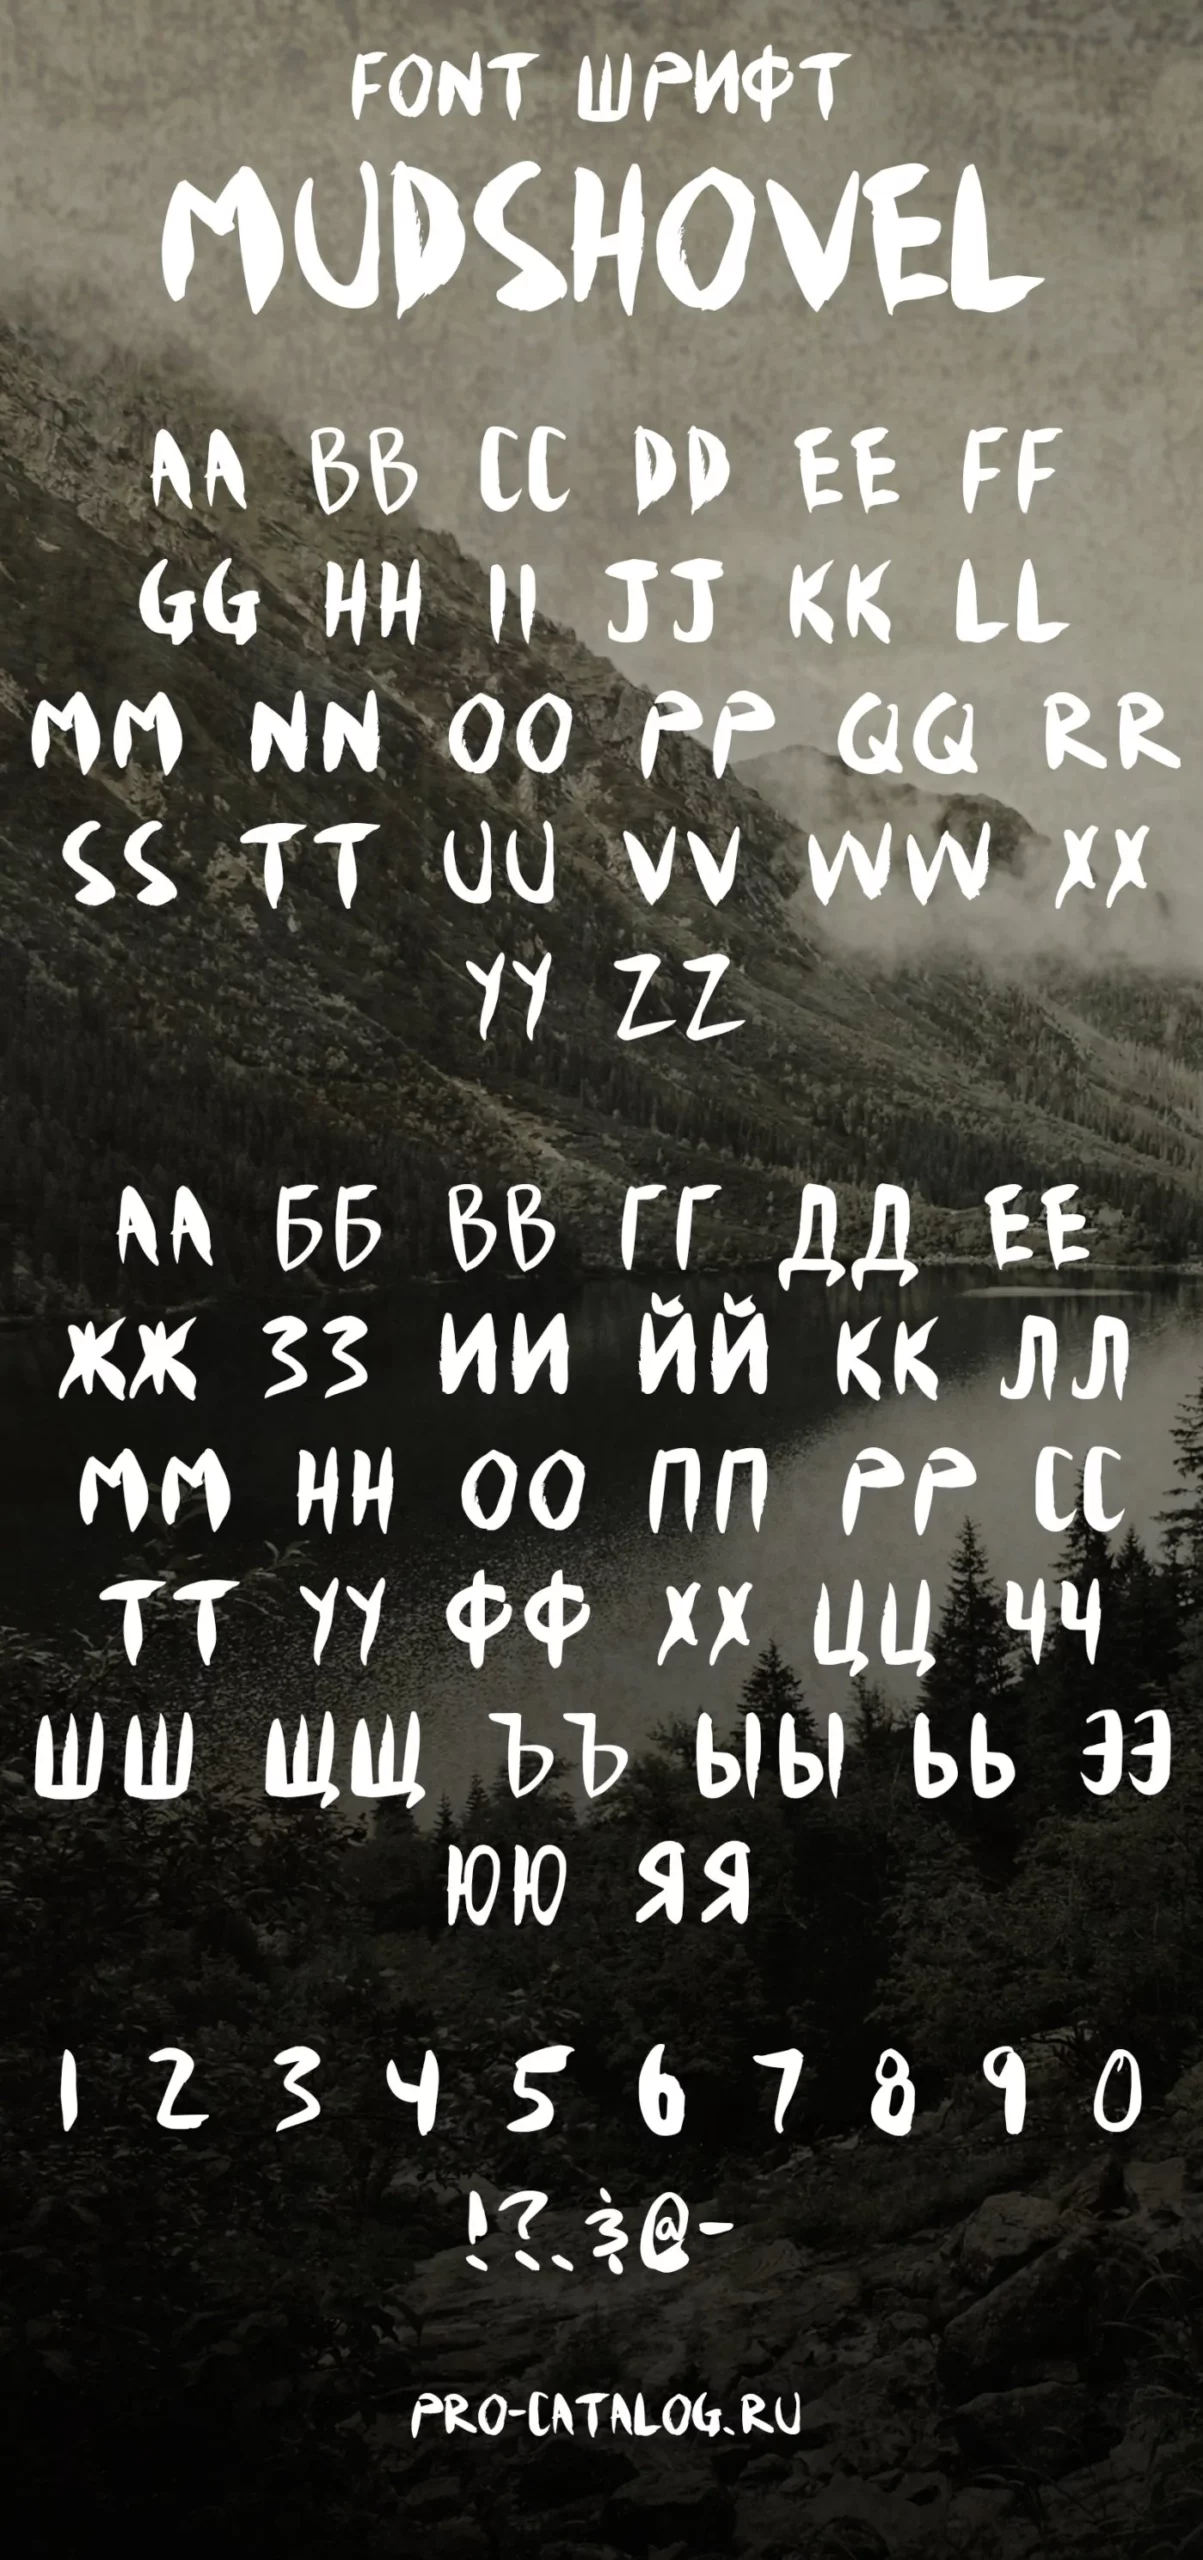 Шрифт Mudshovel Cyrillic